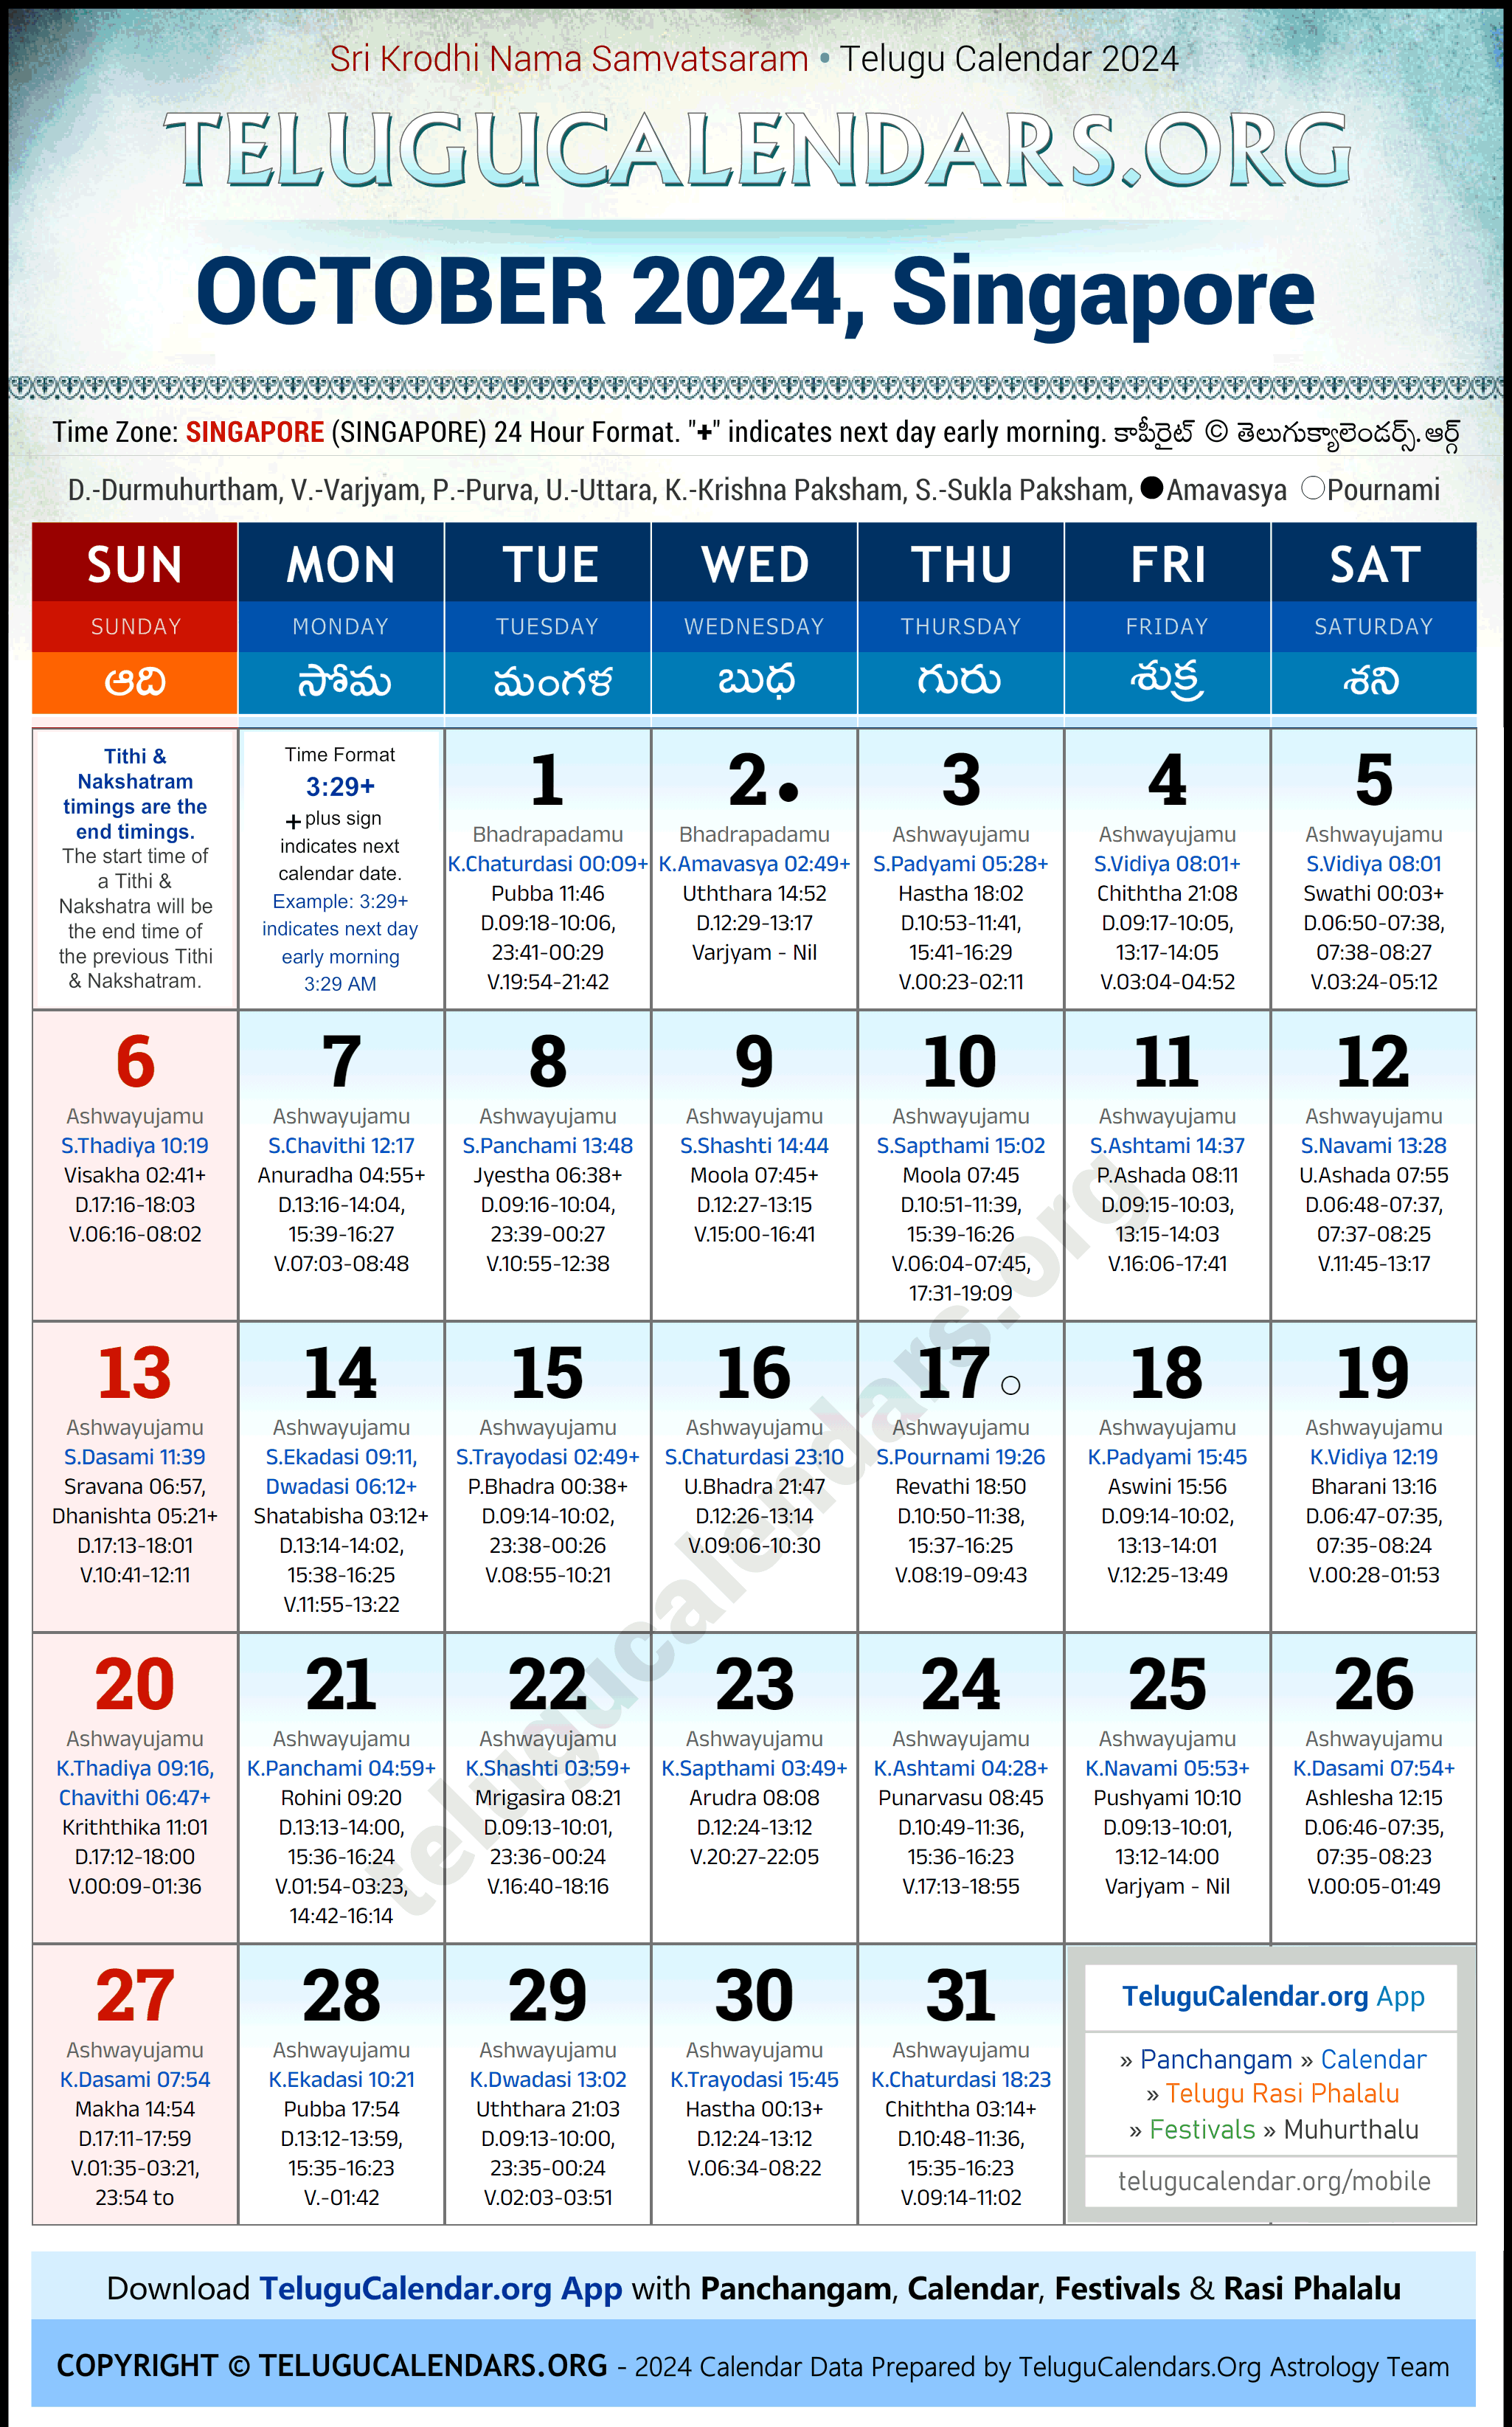 Telugu Calendar 2024 October Festivals for Singapore